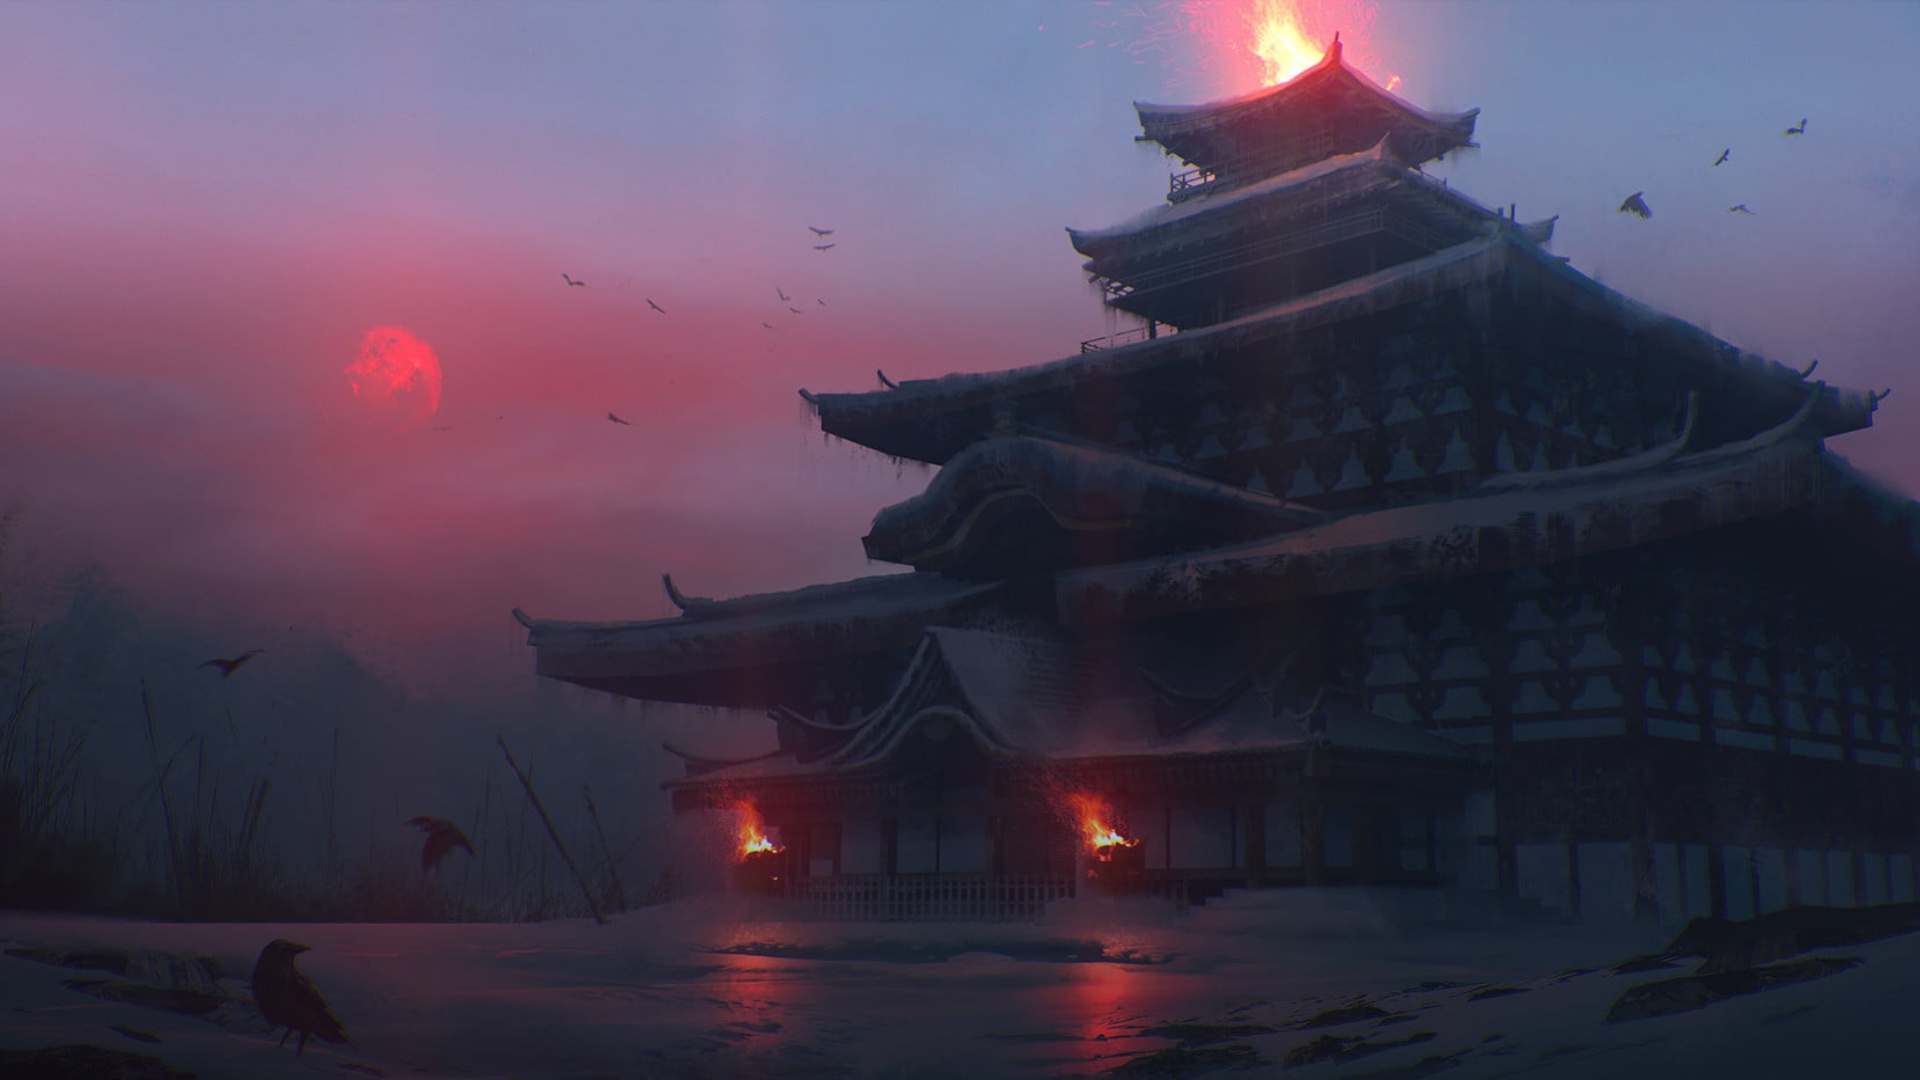 Скачать обои бесплатно Зима, Фэнтези, Япония, Храм картинка на рабочий стол ПК